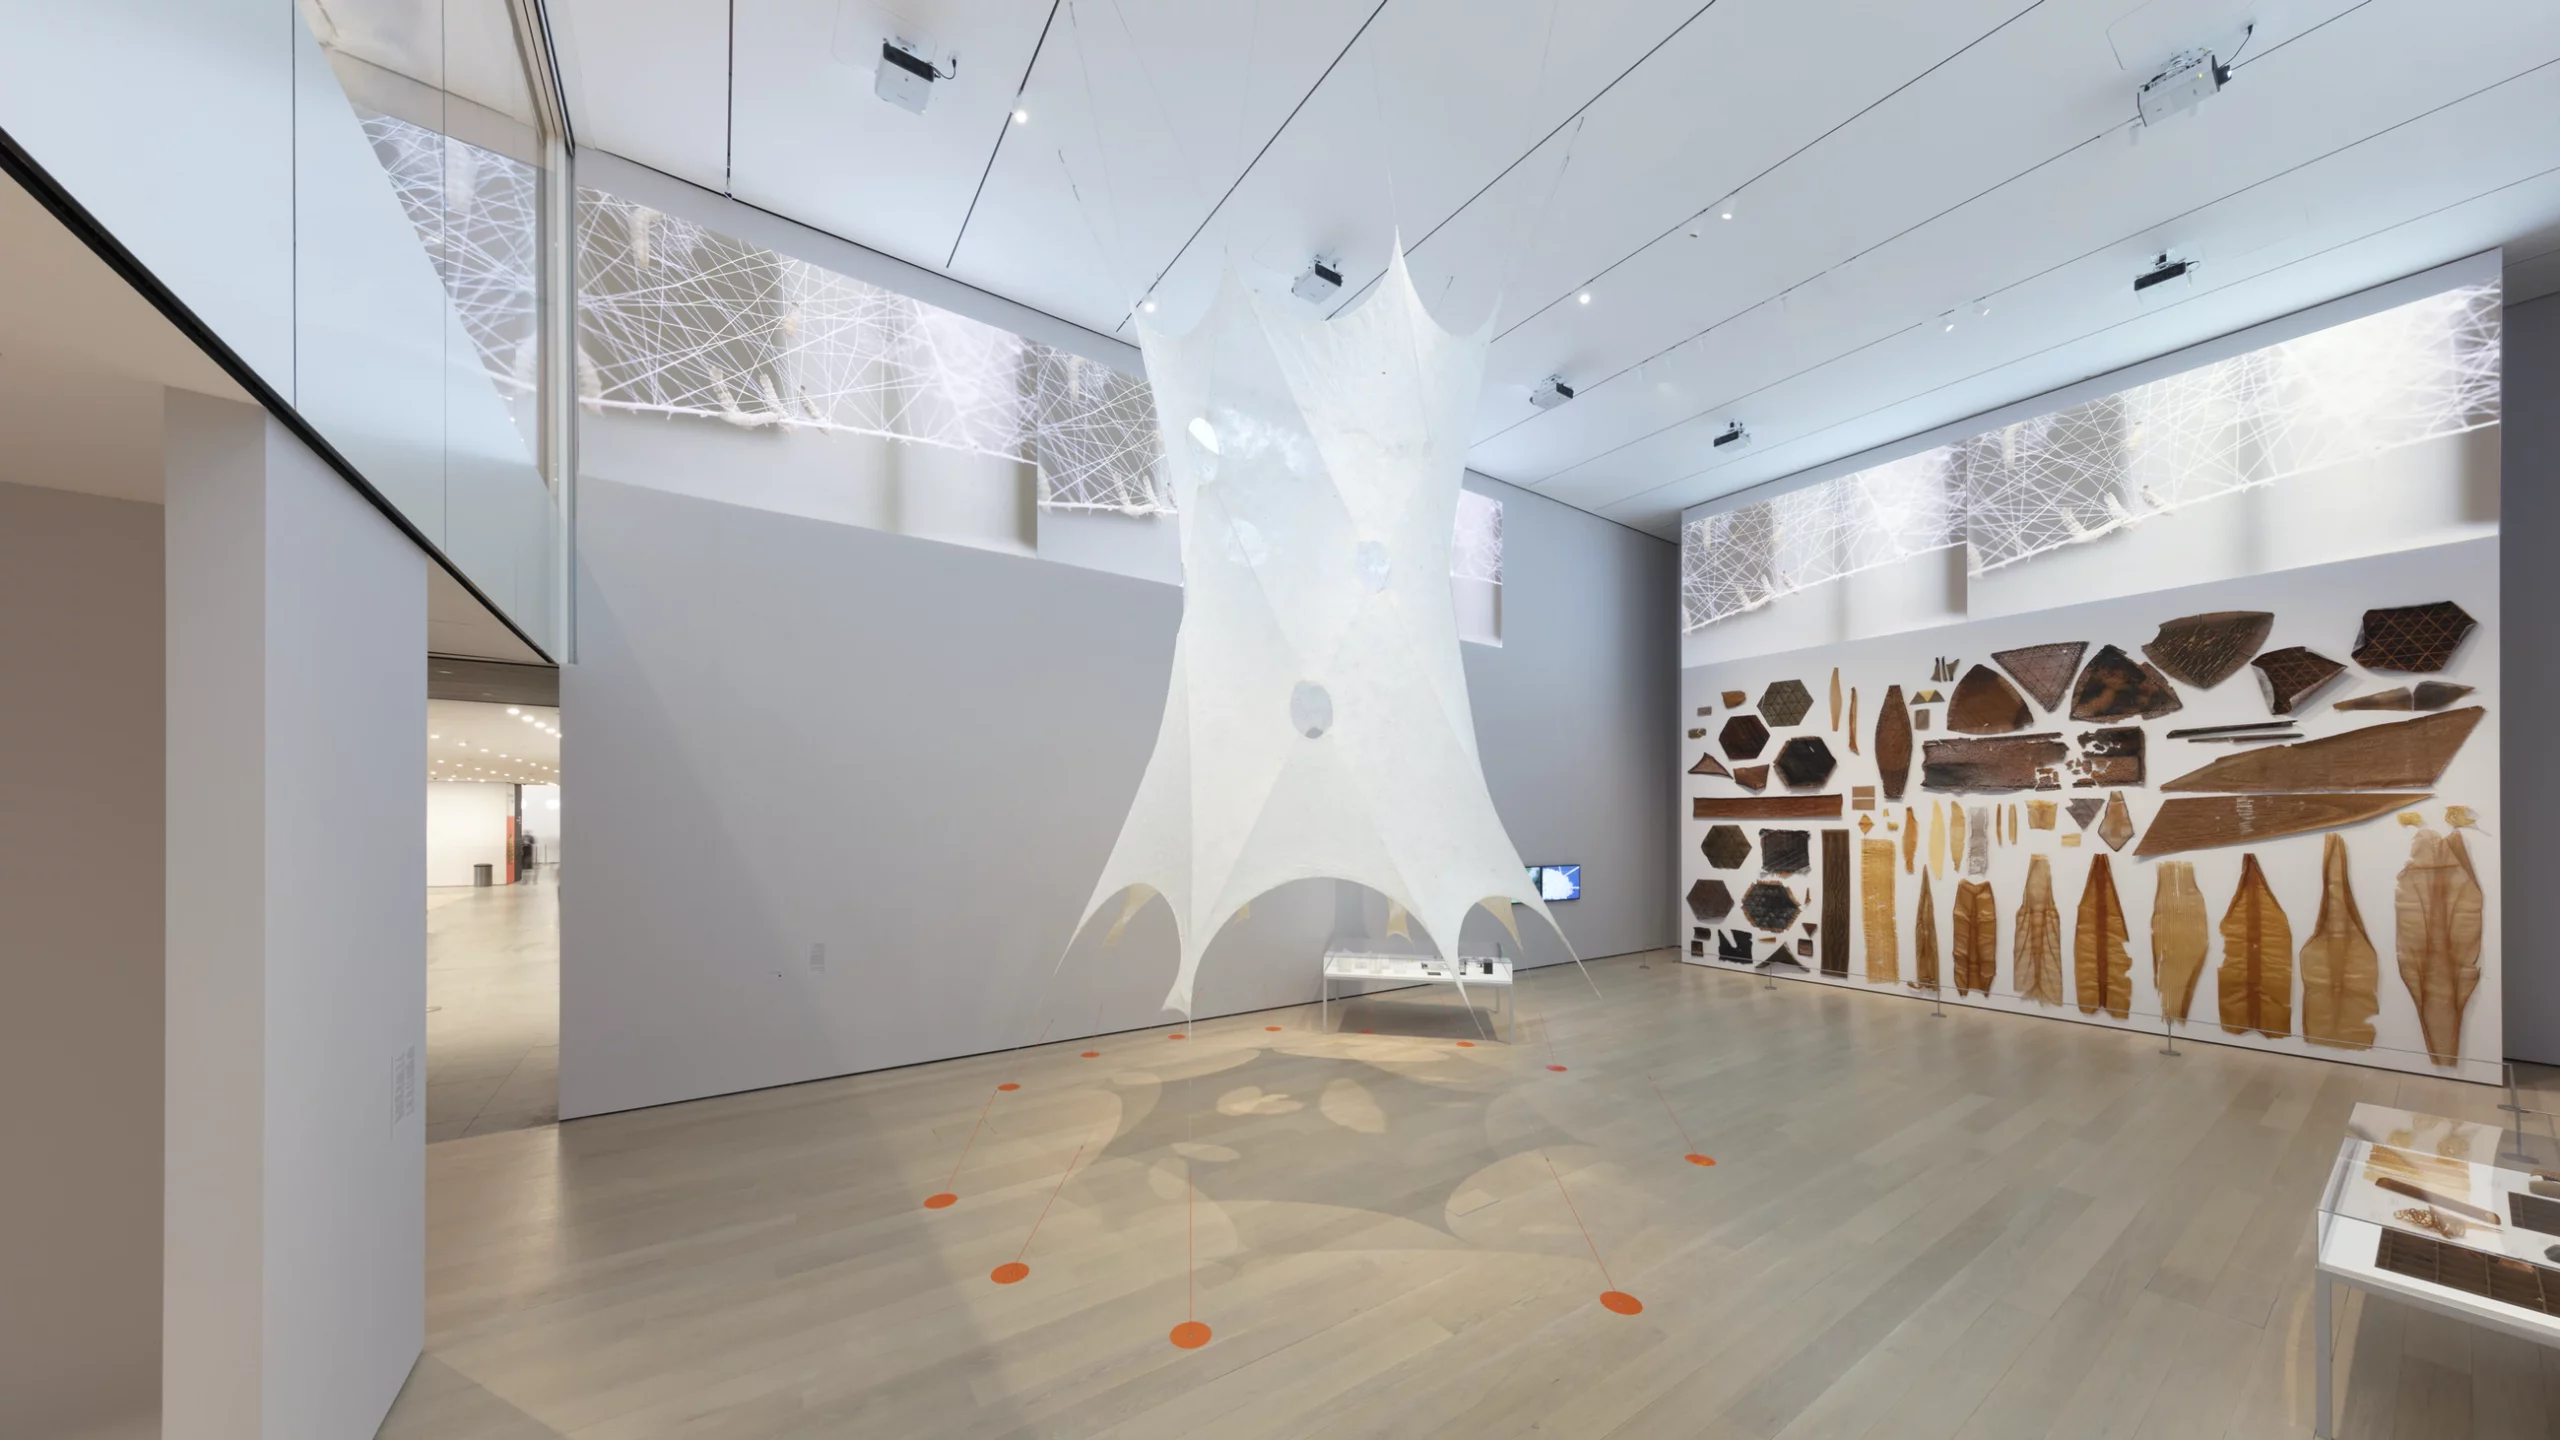  Silk Pavilion II nainštalovaný v MoMA